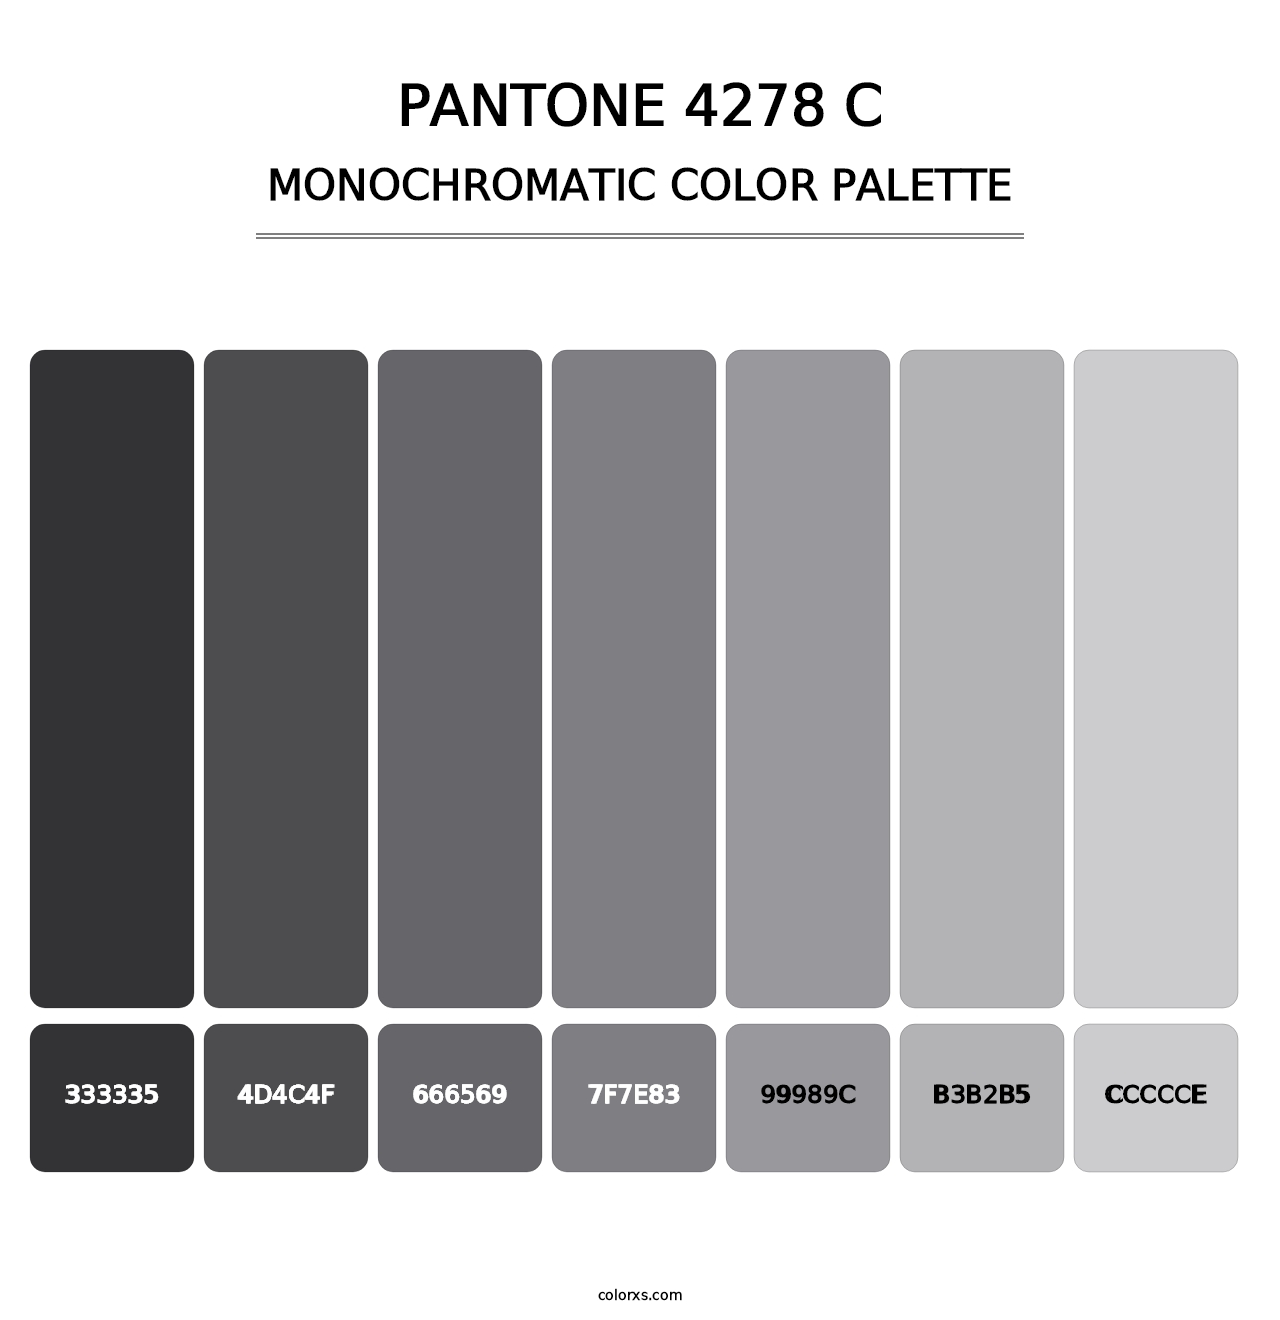 PANTONE 4278 C - Monochromatic Color Palette